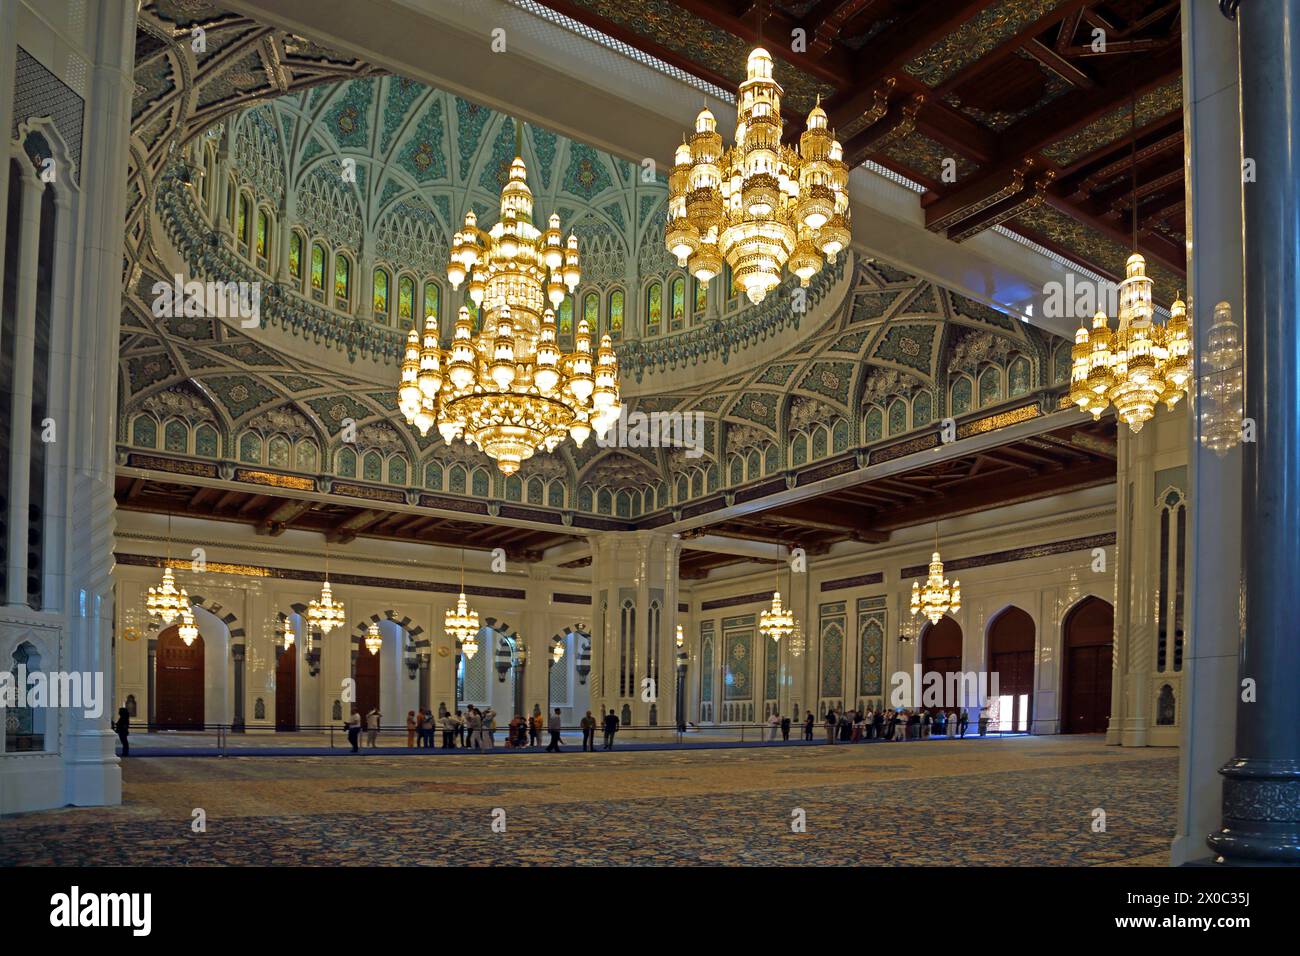 Sultan Qaboos Grand intérieur de la Mosquée montrant le lustre qui était autrefois le plus grand du monde avec des cristaux Swarovski et 24 Carat Fine Gold Pla Banque D'Images